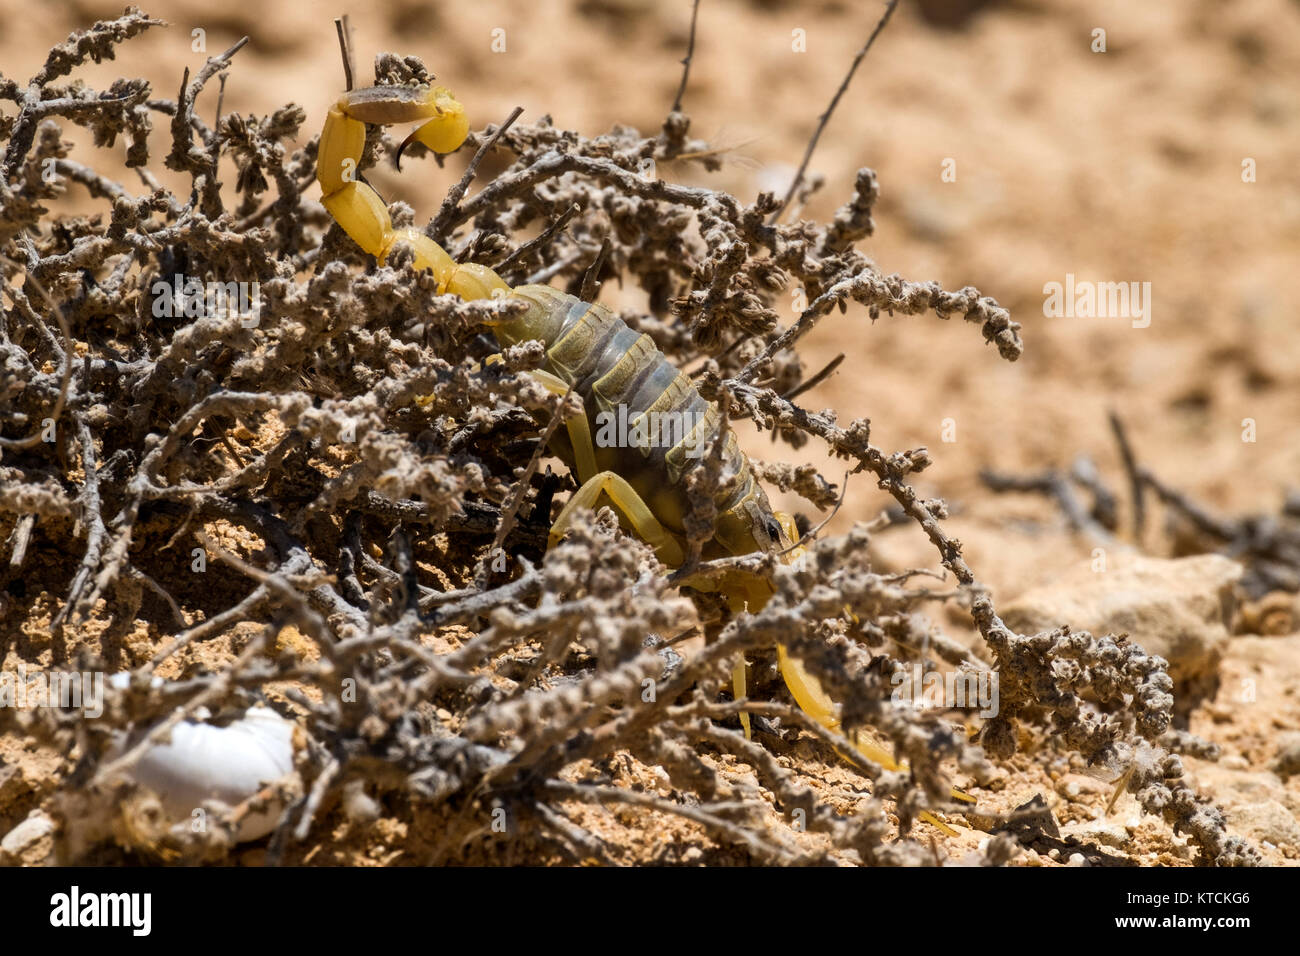 Scorpion deathstalker from the Negev desert took refuge (Leiurus quinquestriatus) Stock Photo